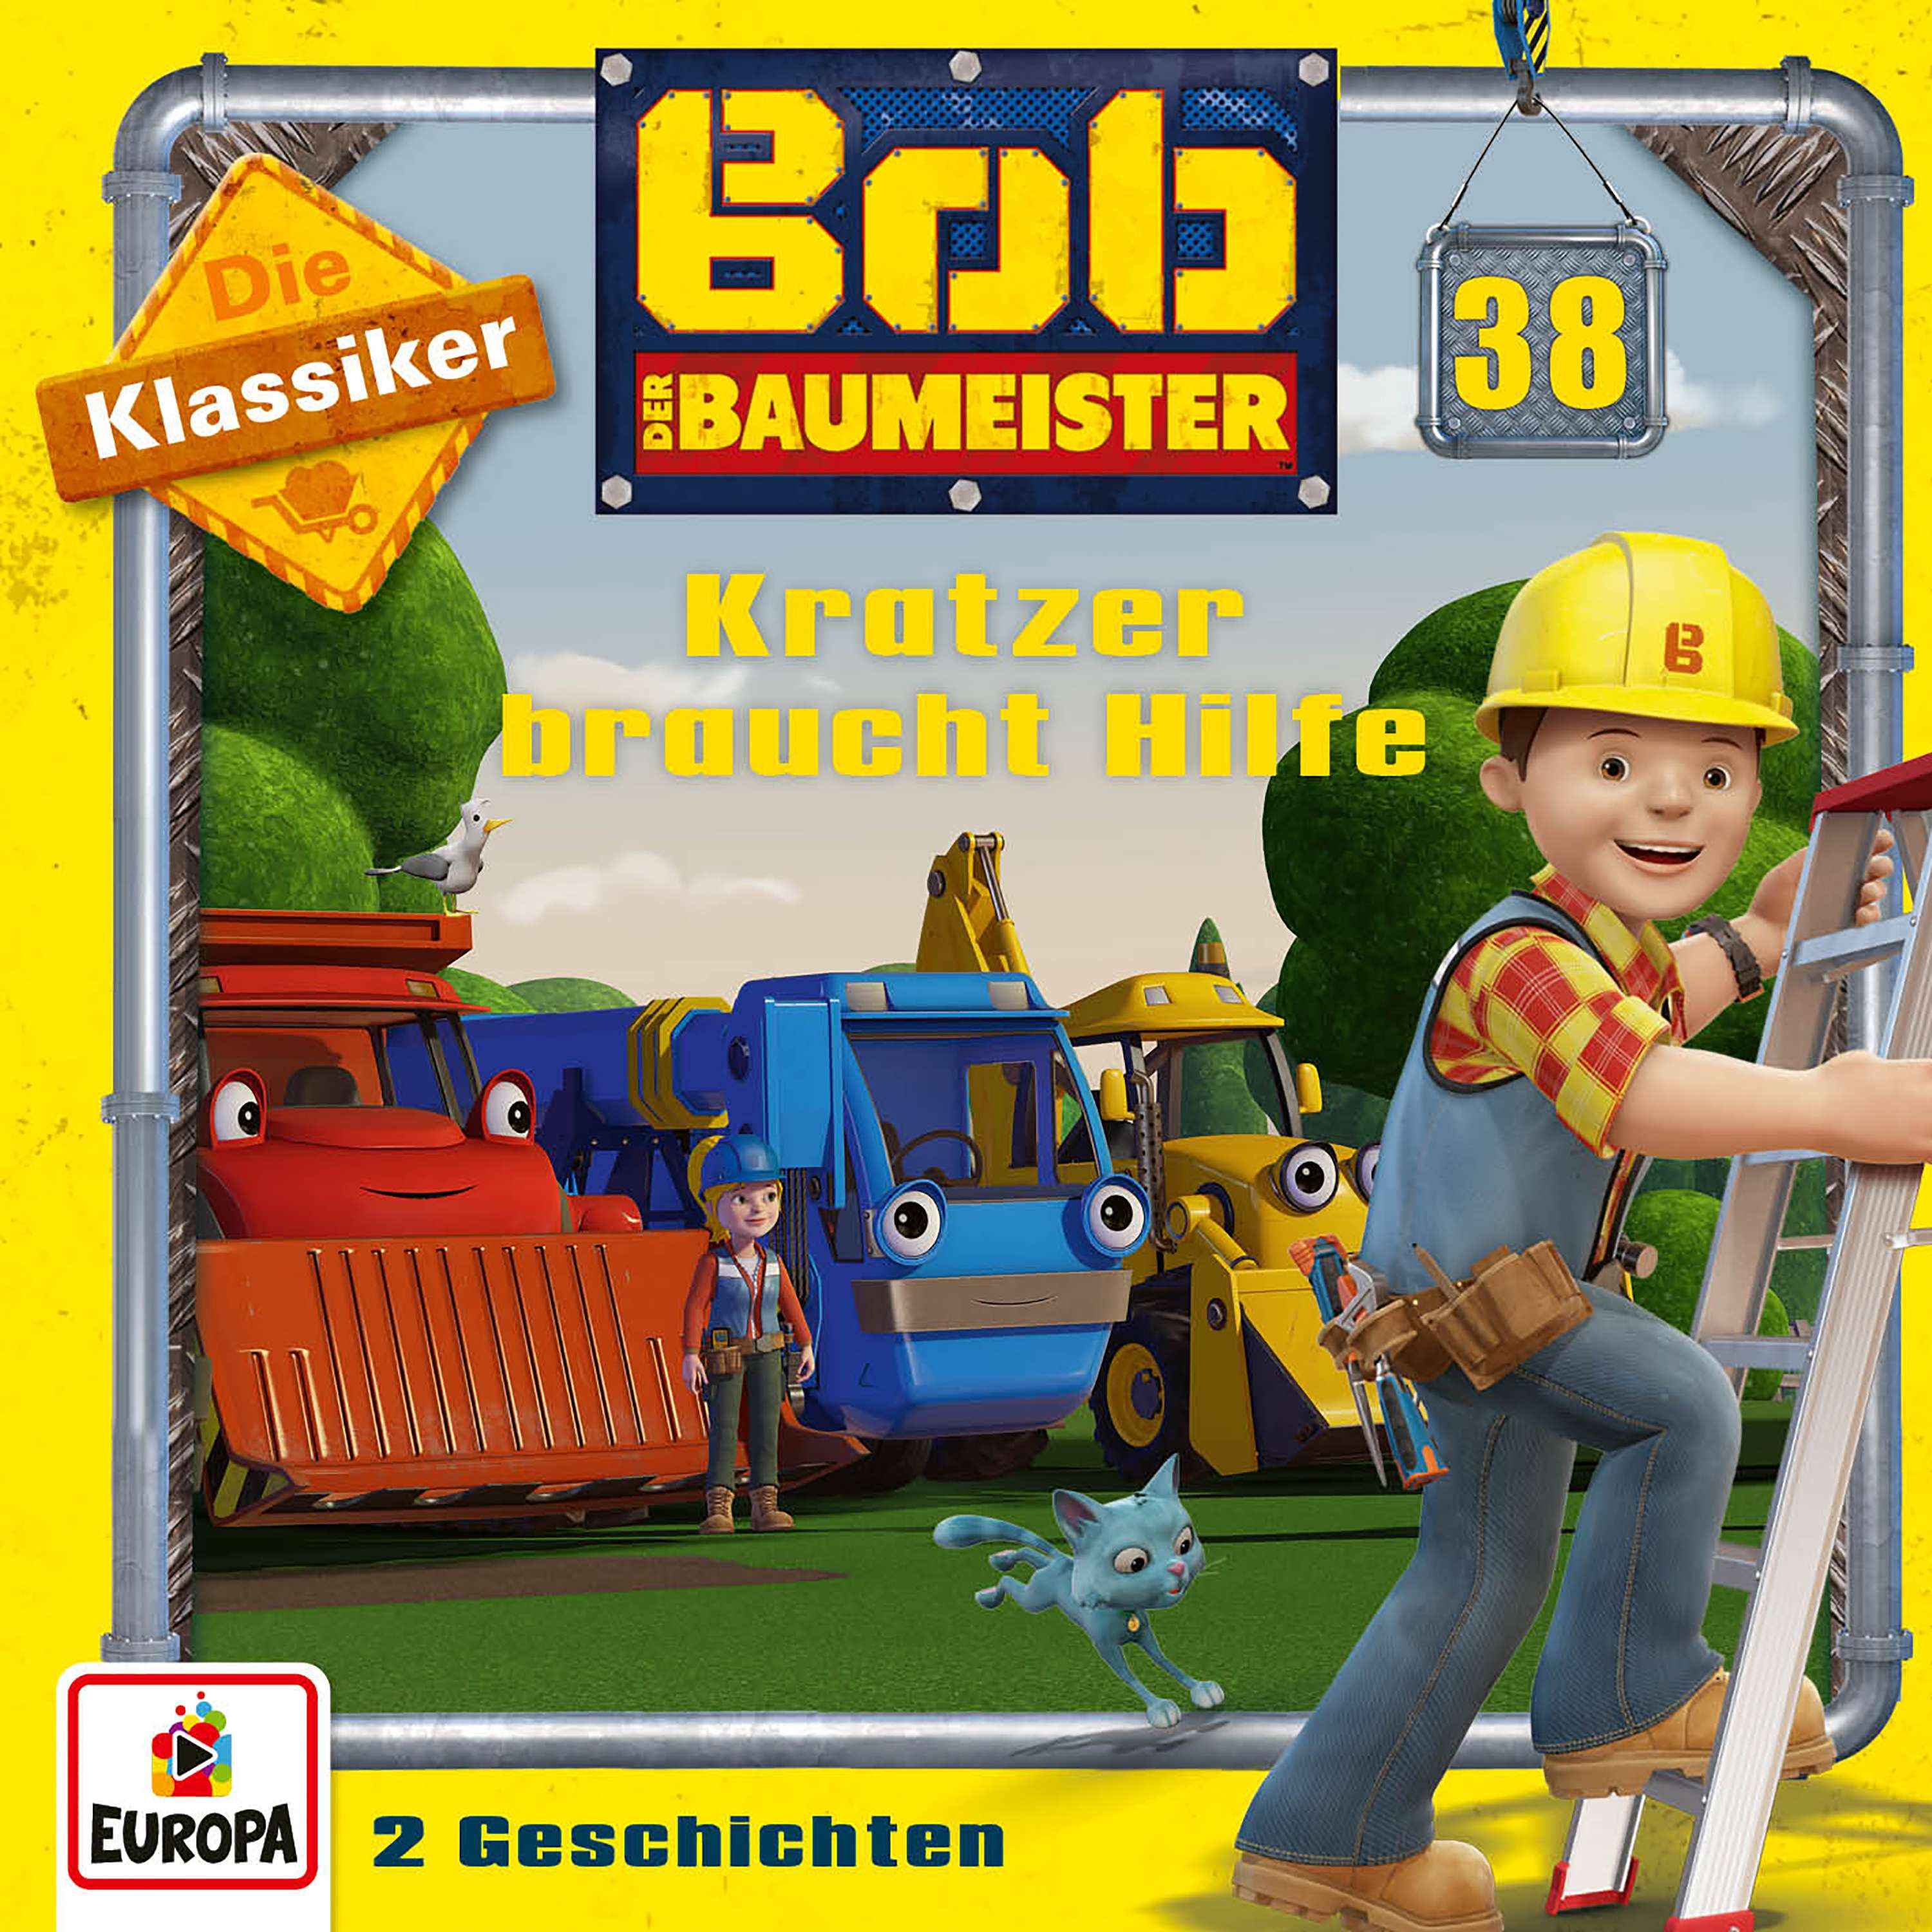 Bob der Baumeister: Kratzer braucht Hilfe (Die Klassiker)